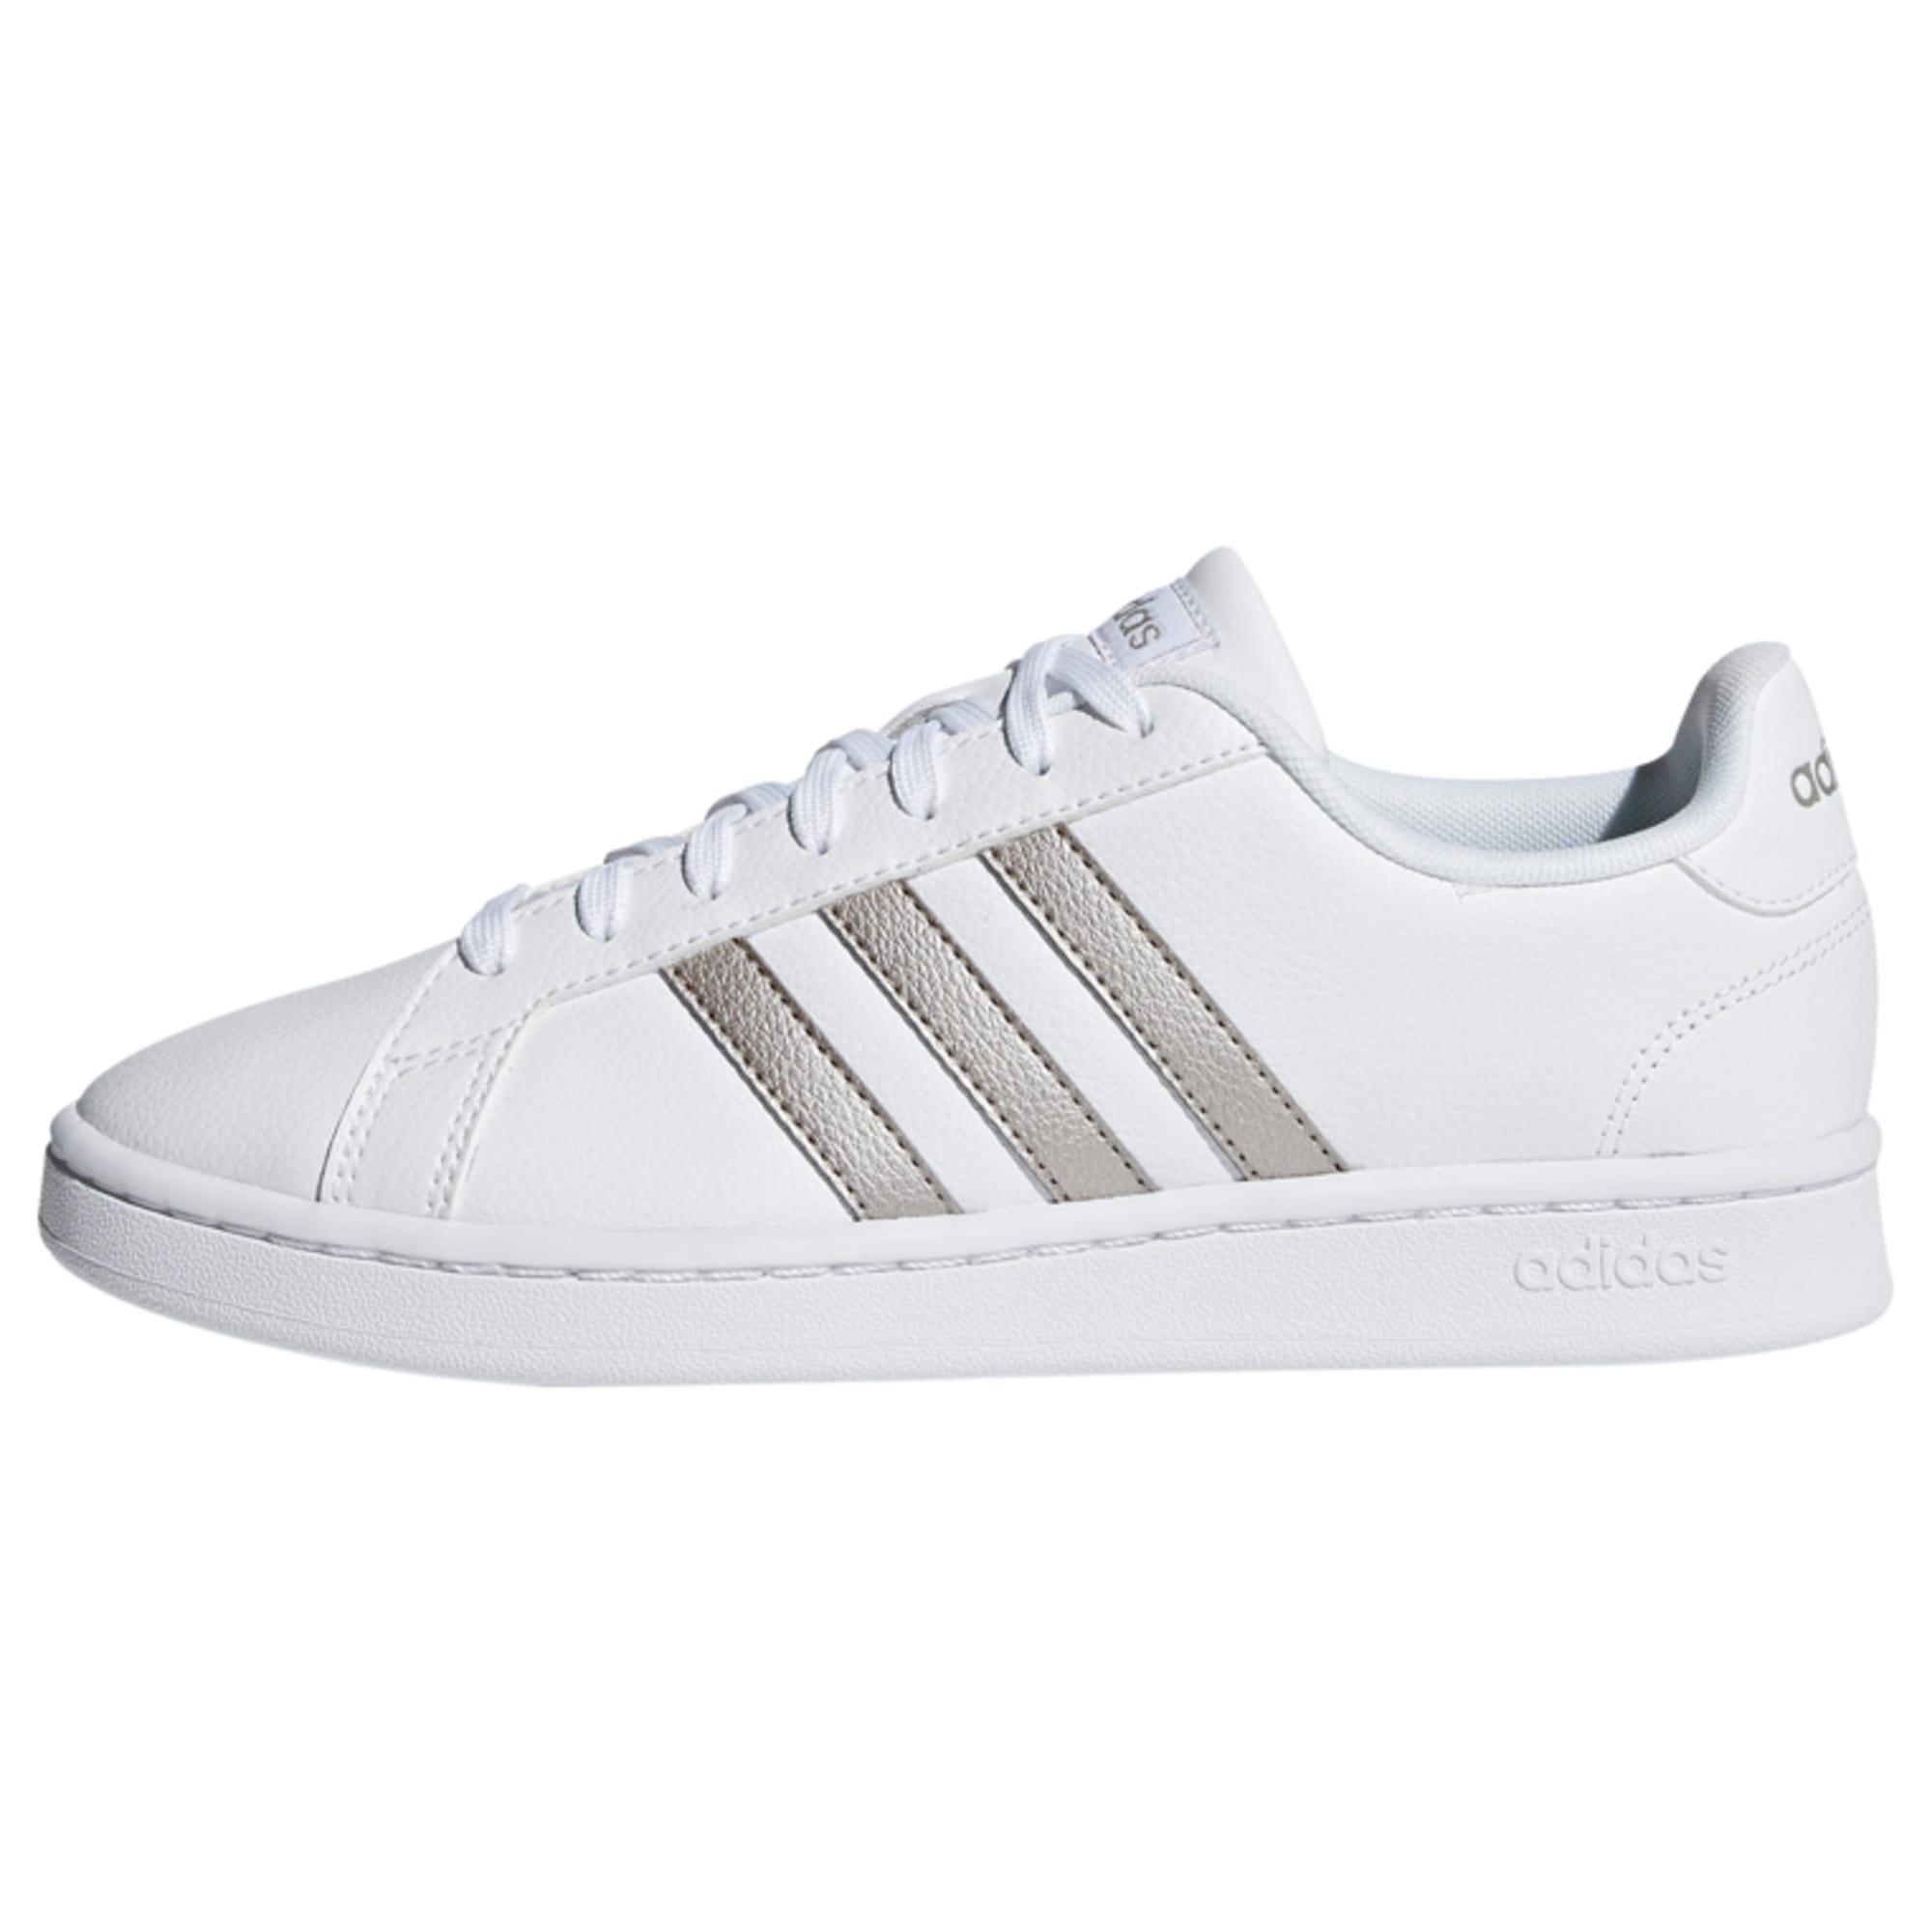 Adidas Grand Court Schuh Sneaker Damen Cloud White / Platin Met. / Cloud White Online Shop von SportScheck kaufen